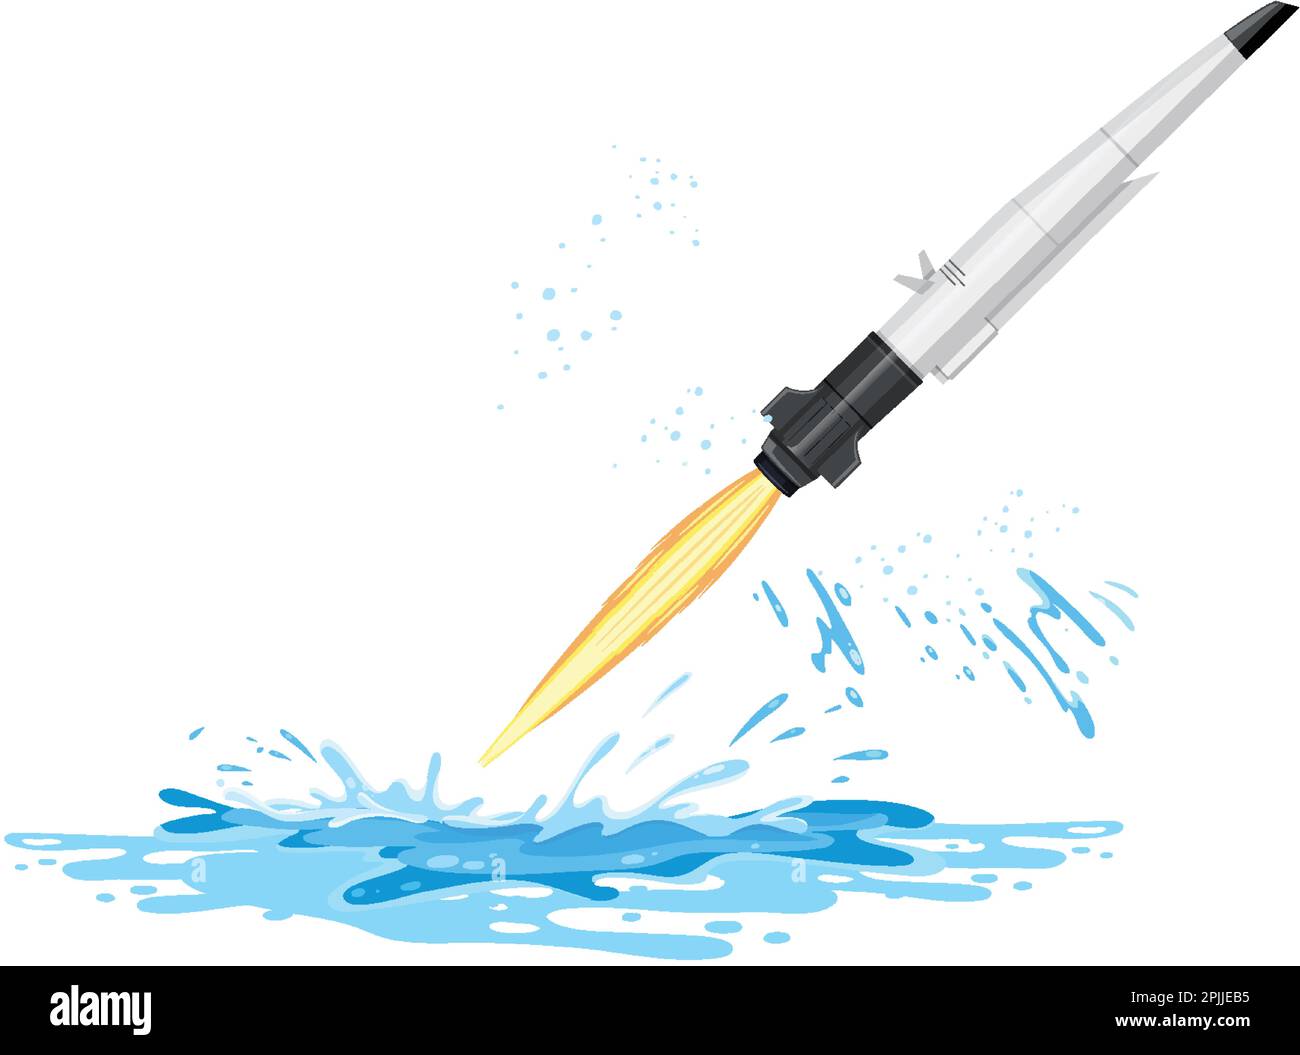 Lancio di missili ipertonici dall'illustrazione dell'acqua Illustrazione Vettoriale